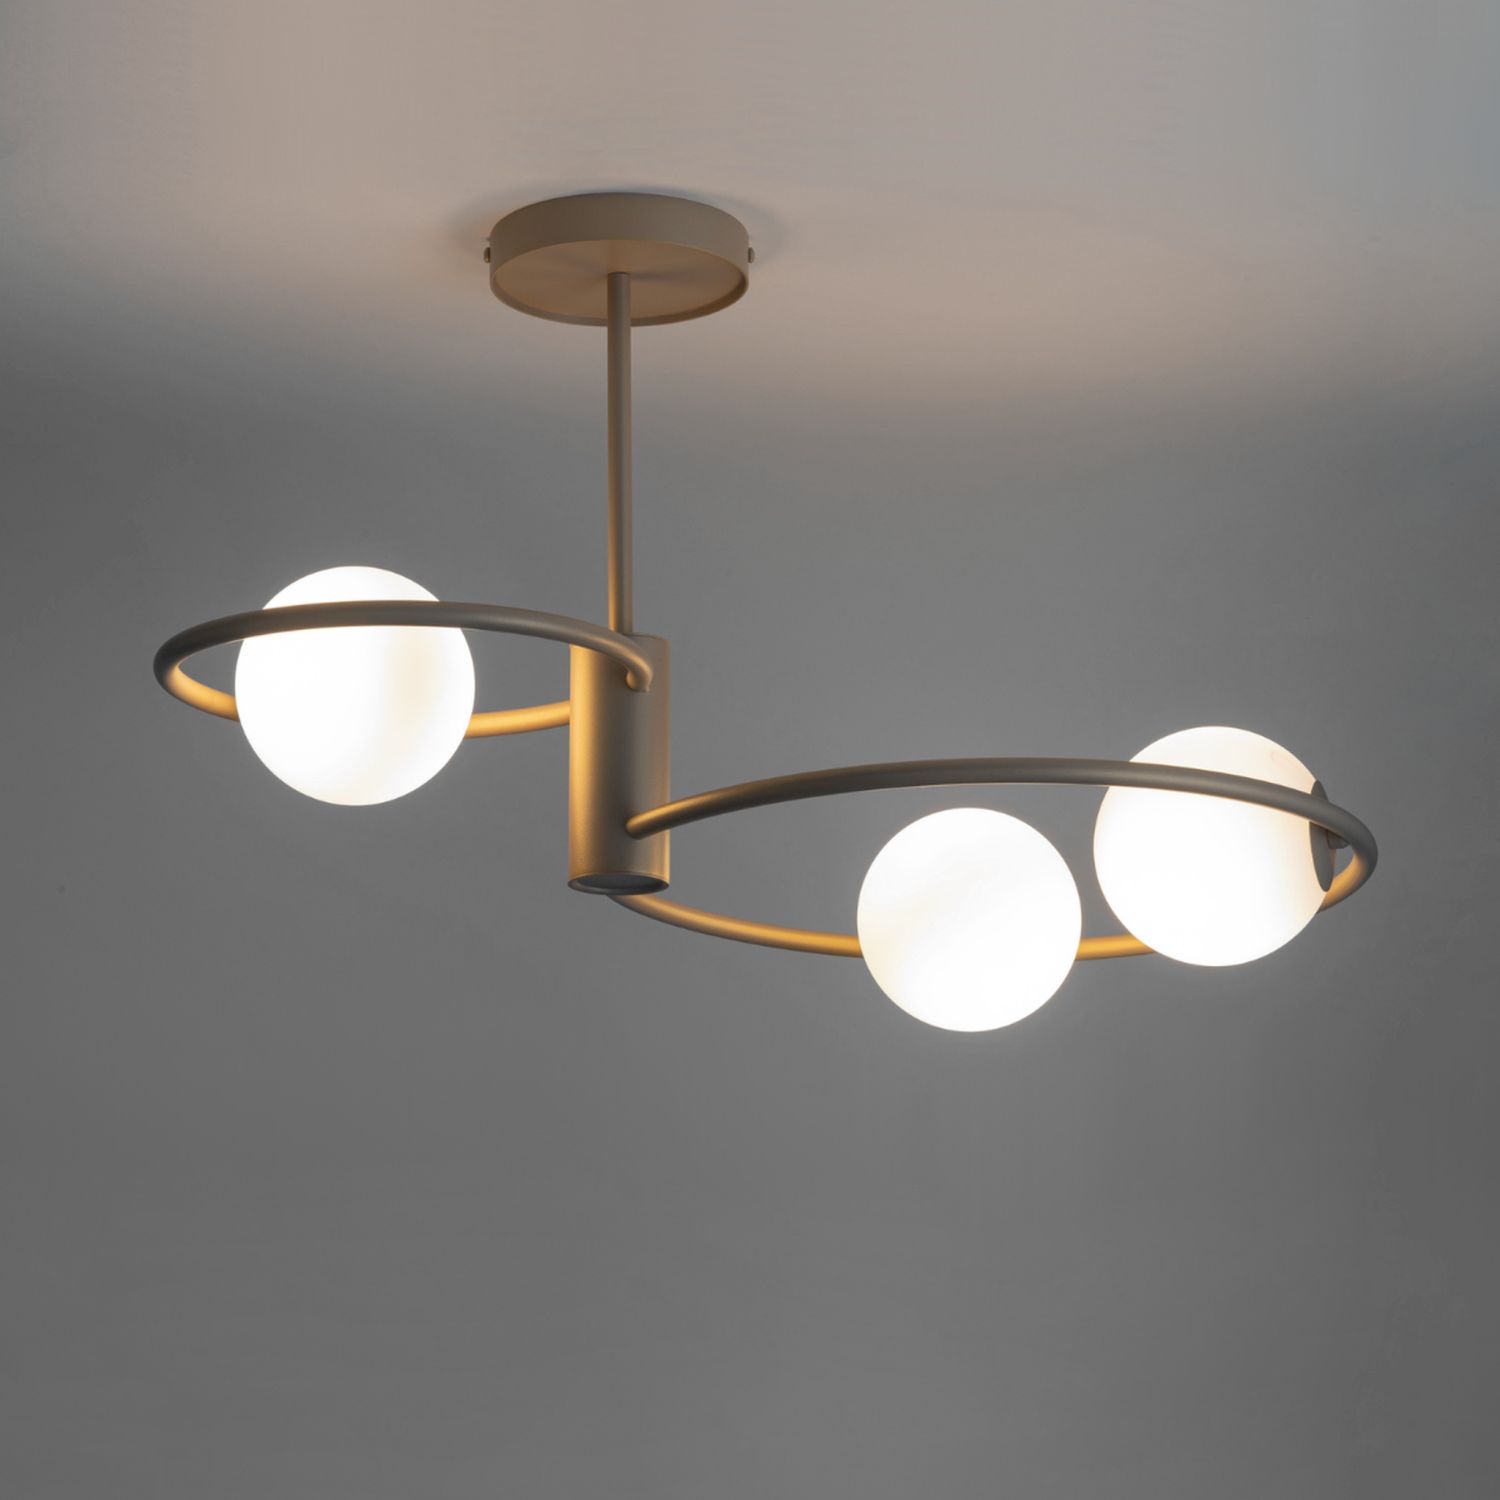 Design Deckenlampe Glas Metall dekorativ G9 wohnlich